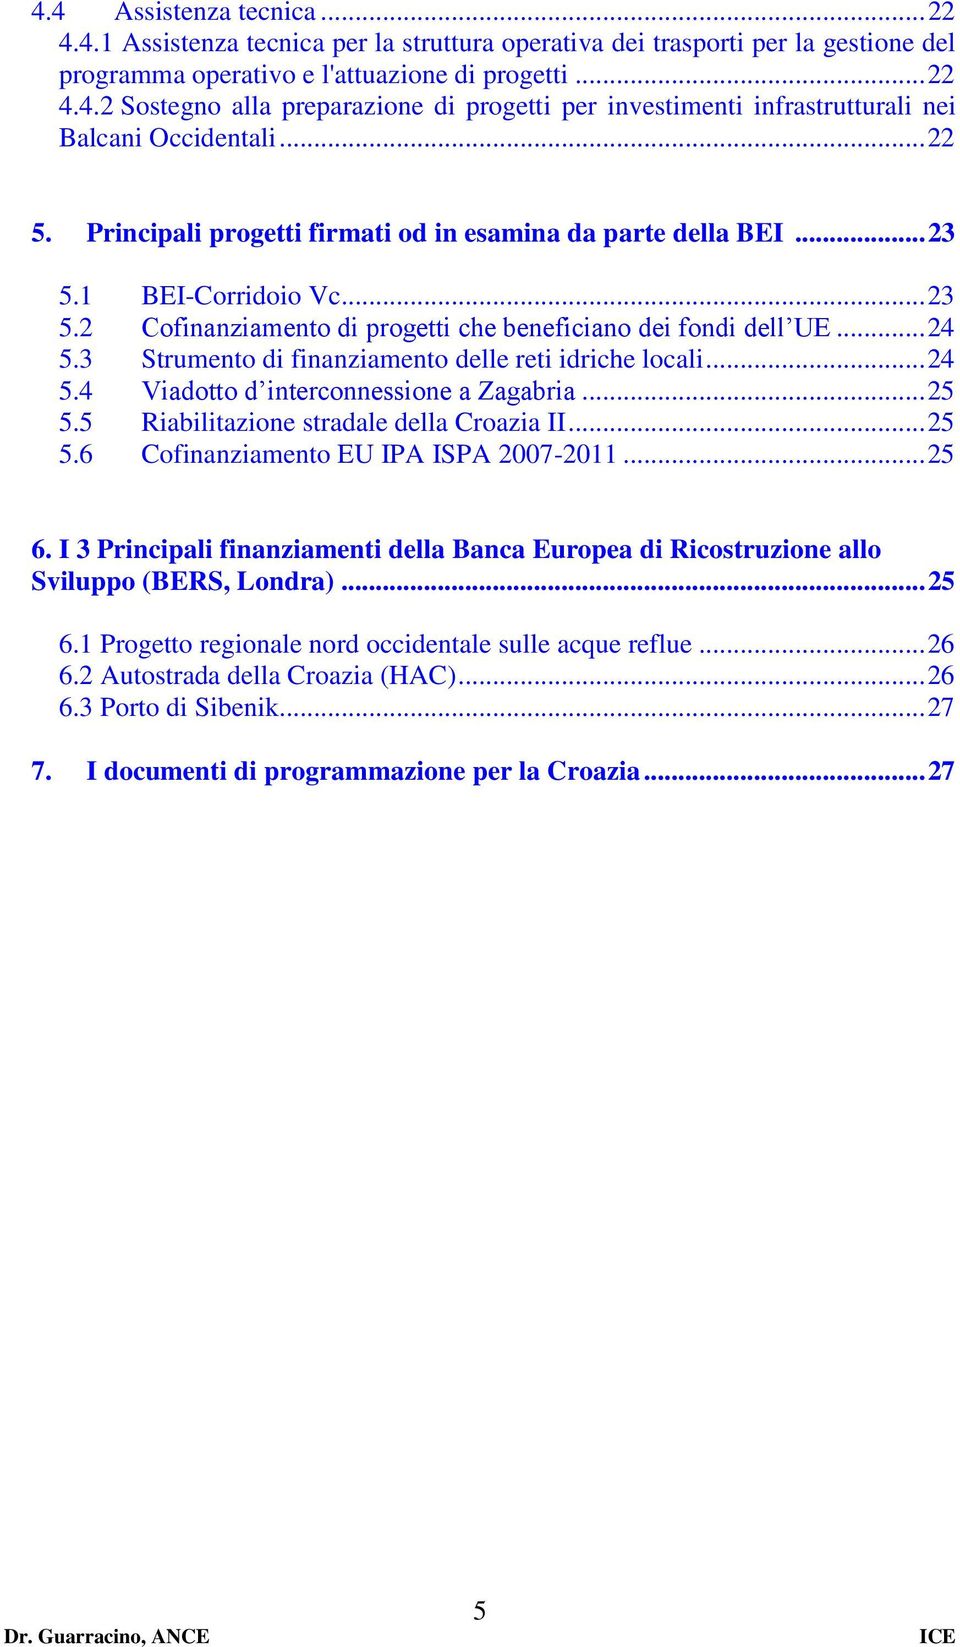 3 Strumento di finanziamento delle reti idriche locali... 24 5.4 Viadotto d interconnessione a Zagabria... 25 5.5 Riabilitazione stradale della Croazia II... 25 5.6 Cofinanziamento EU IPA ISPA 2007-2011.